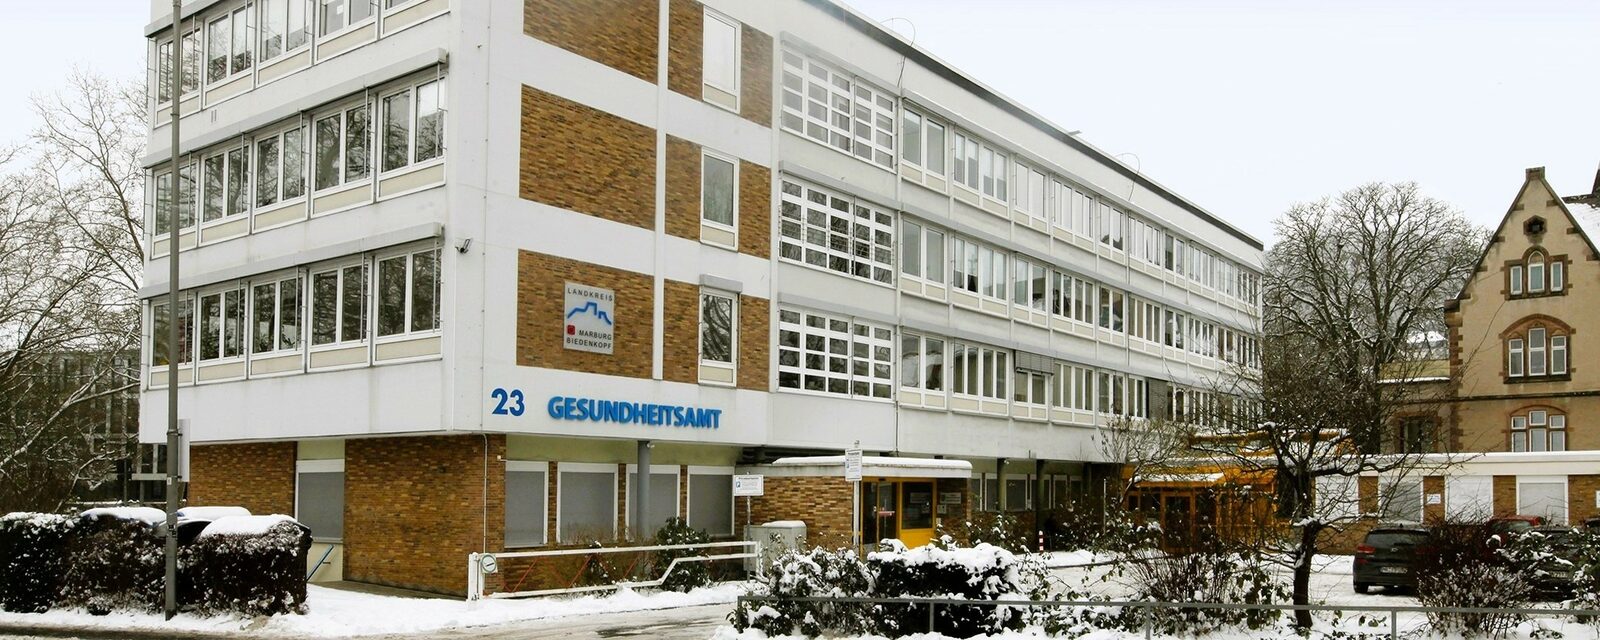 Gebäude Gesundheitsamt Marburg im Winter